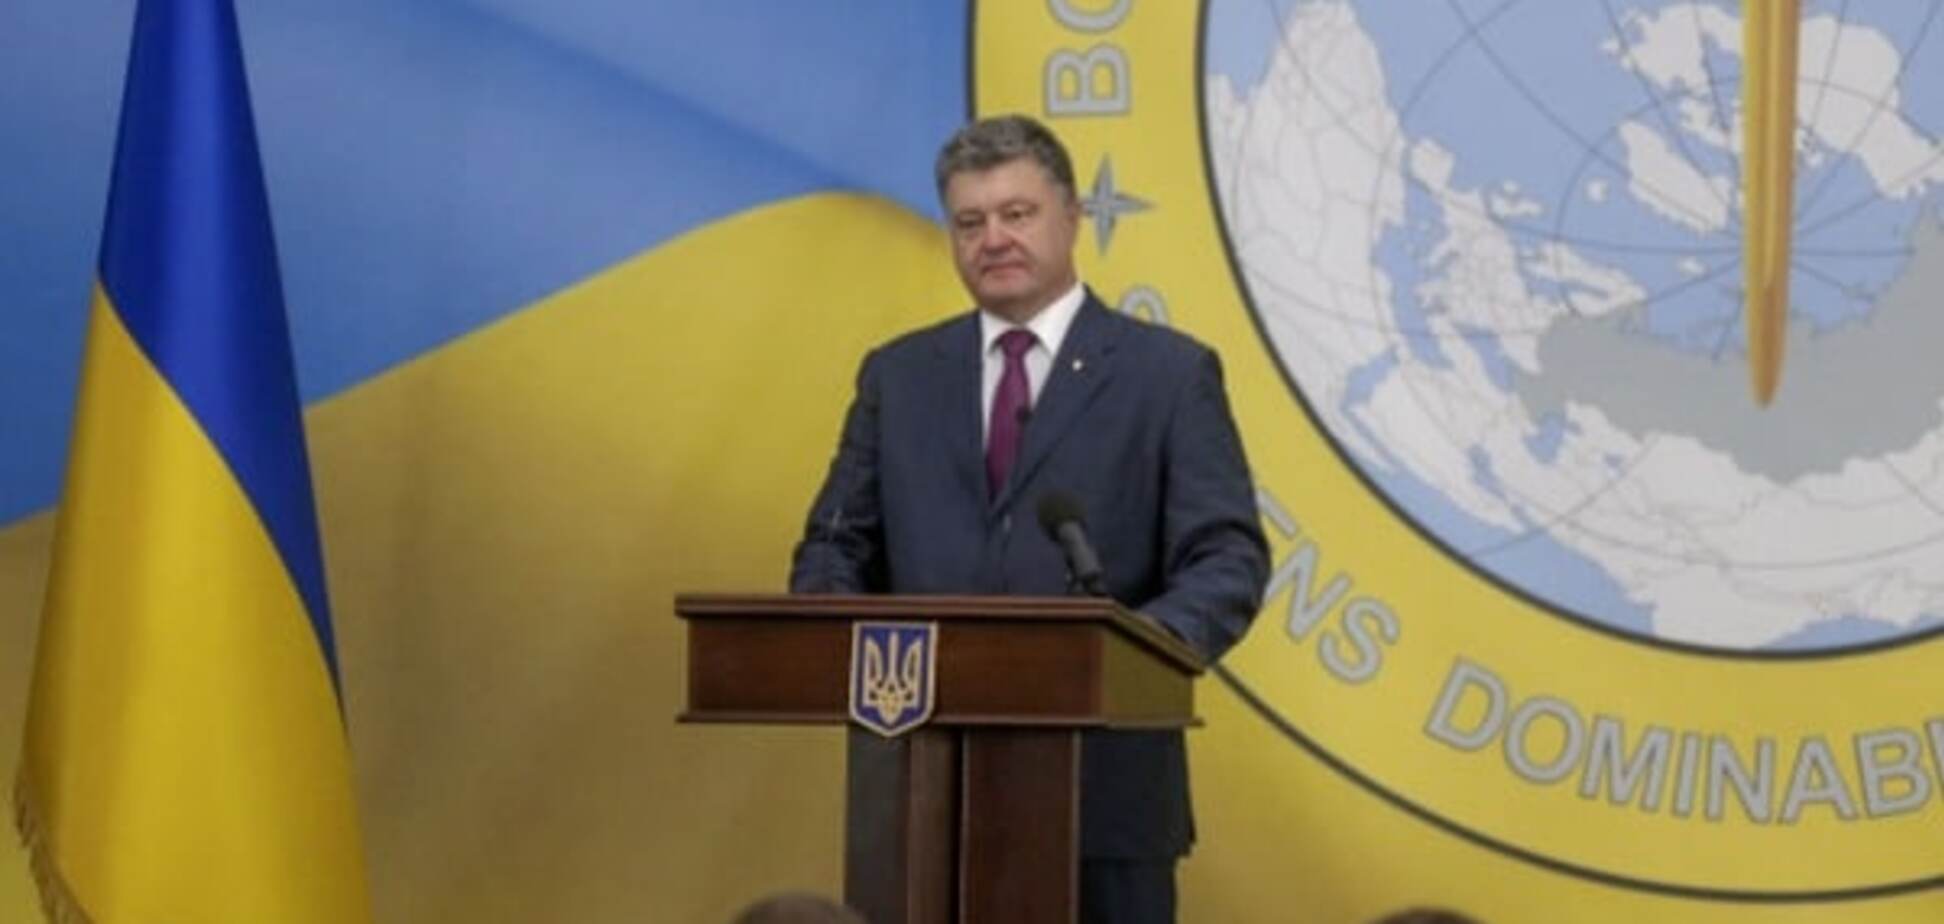 'Элита нации': Порошенко поздравил украинских разведчиков с профессиональным праздником